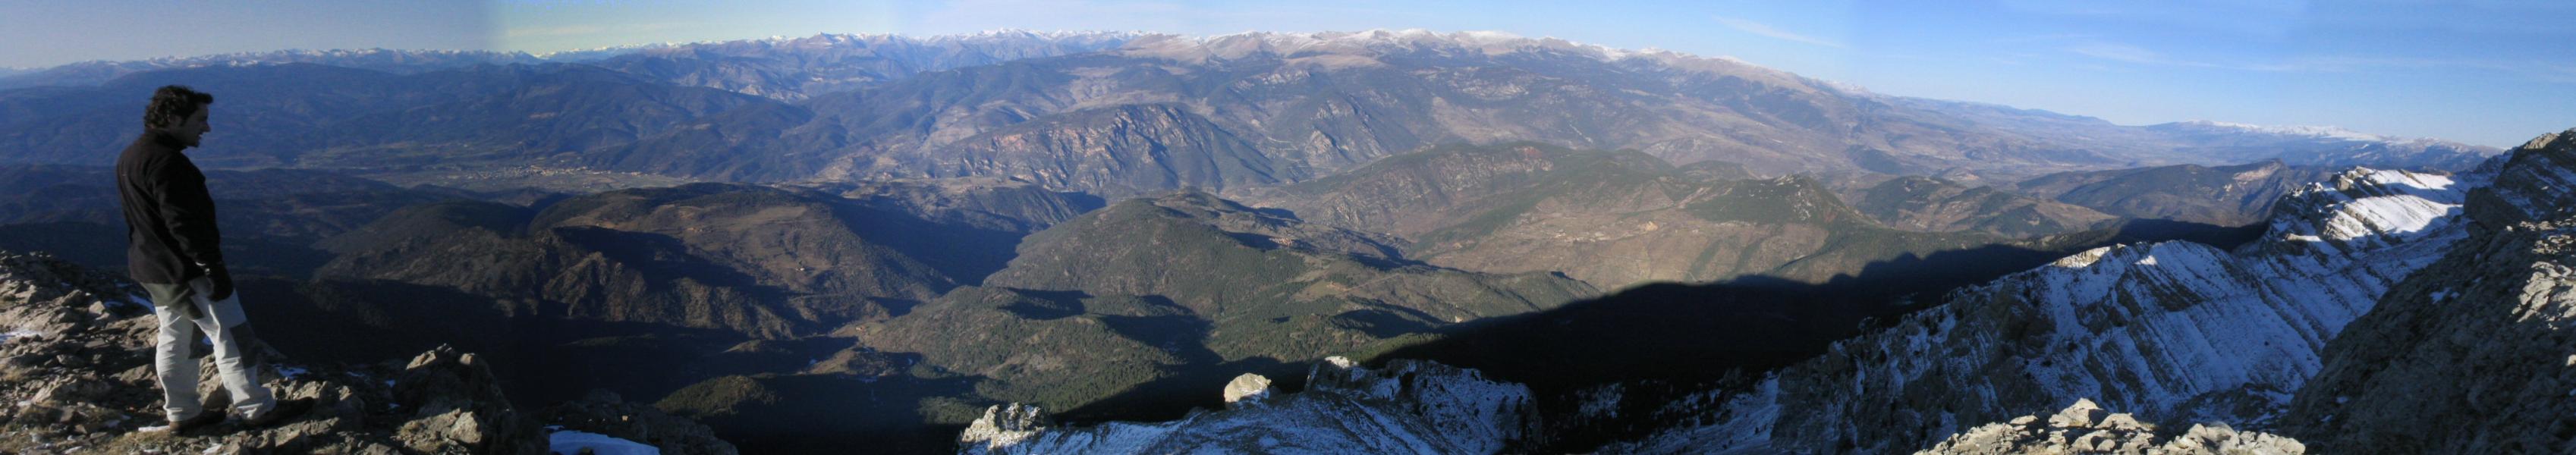 Les vistes del Pirineu des del cim